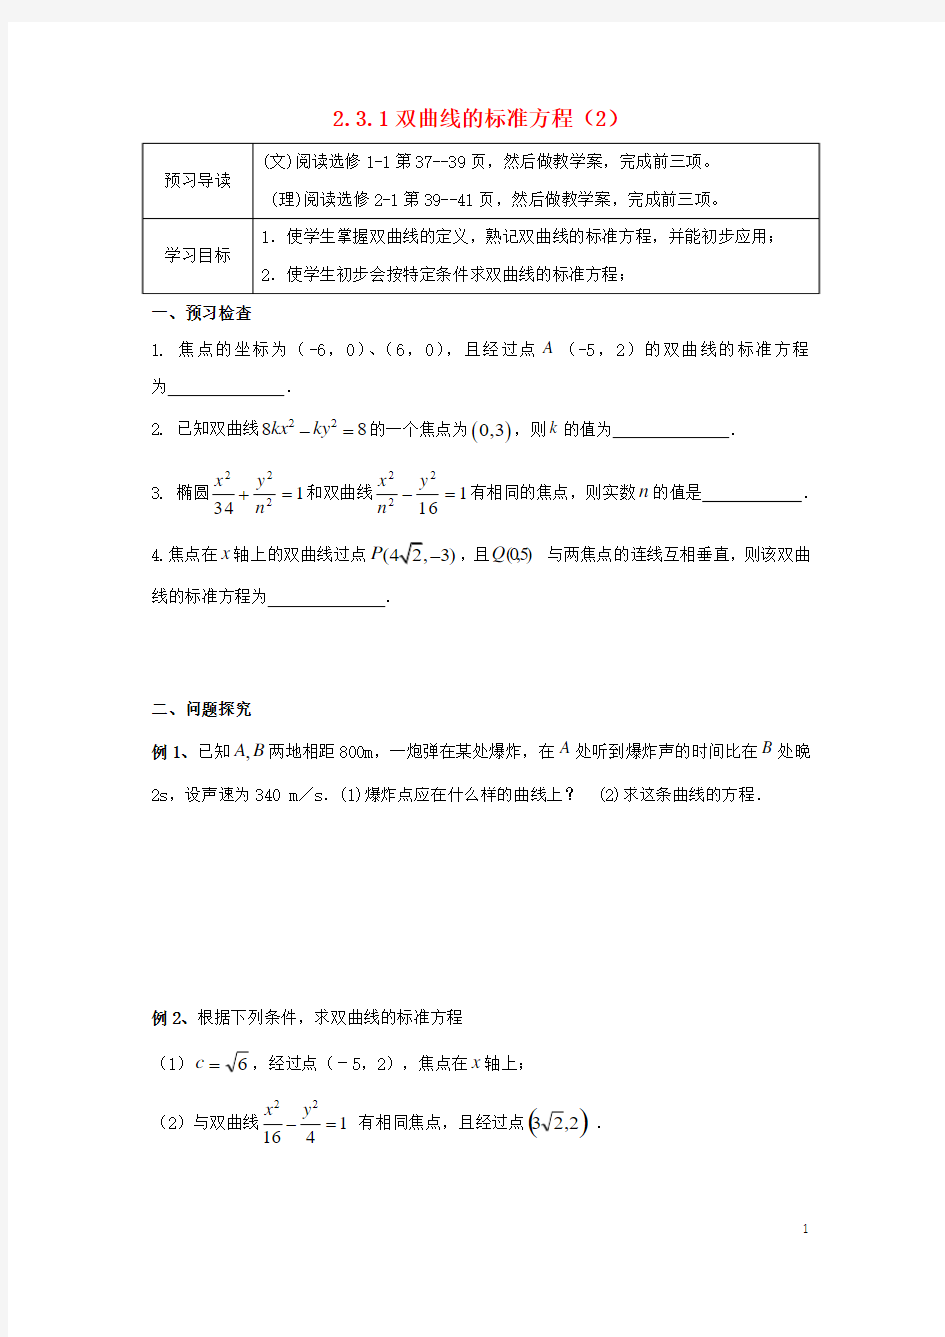 江苏徐州市高中数学第二章圆锥曲线与方程231双曲线的标准方程(2)学案苏教版1-1!